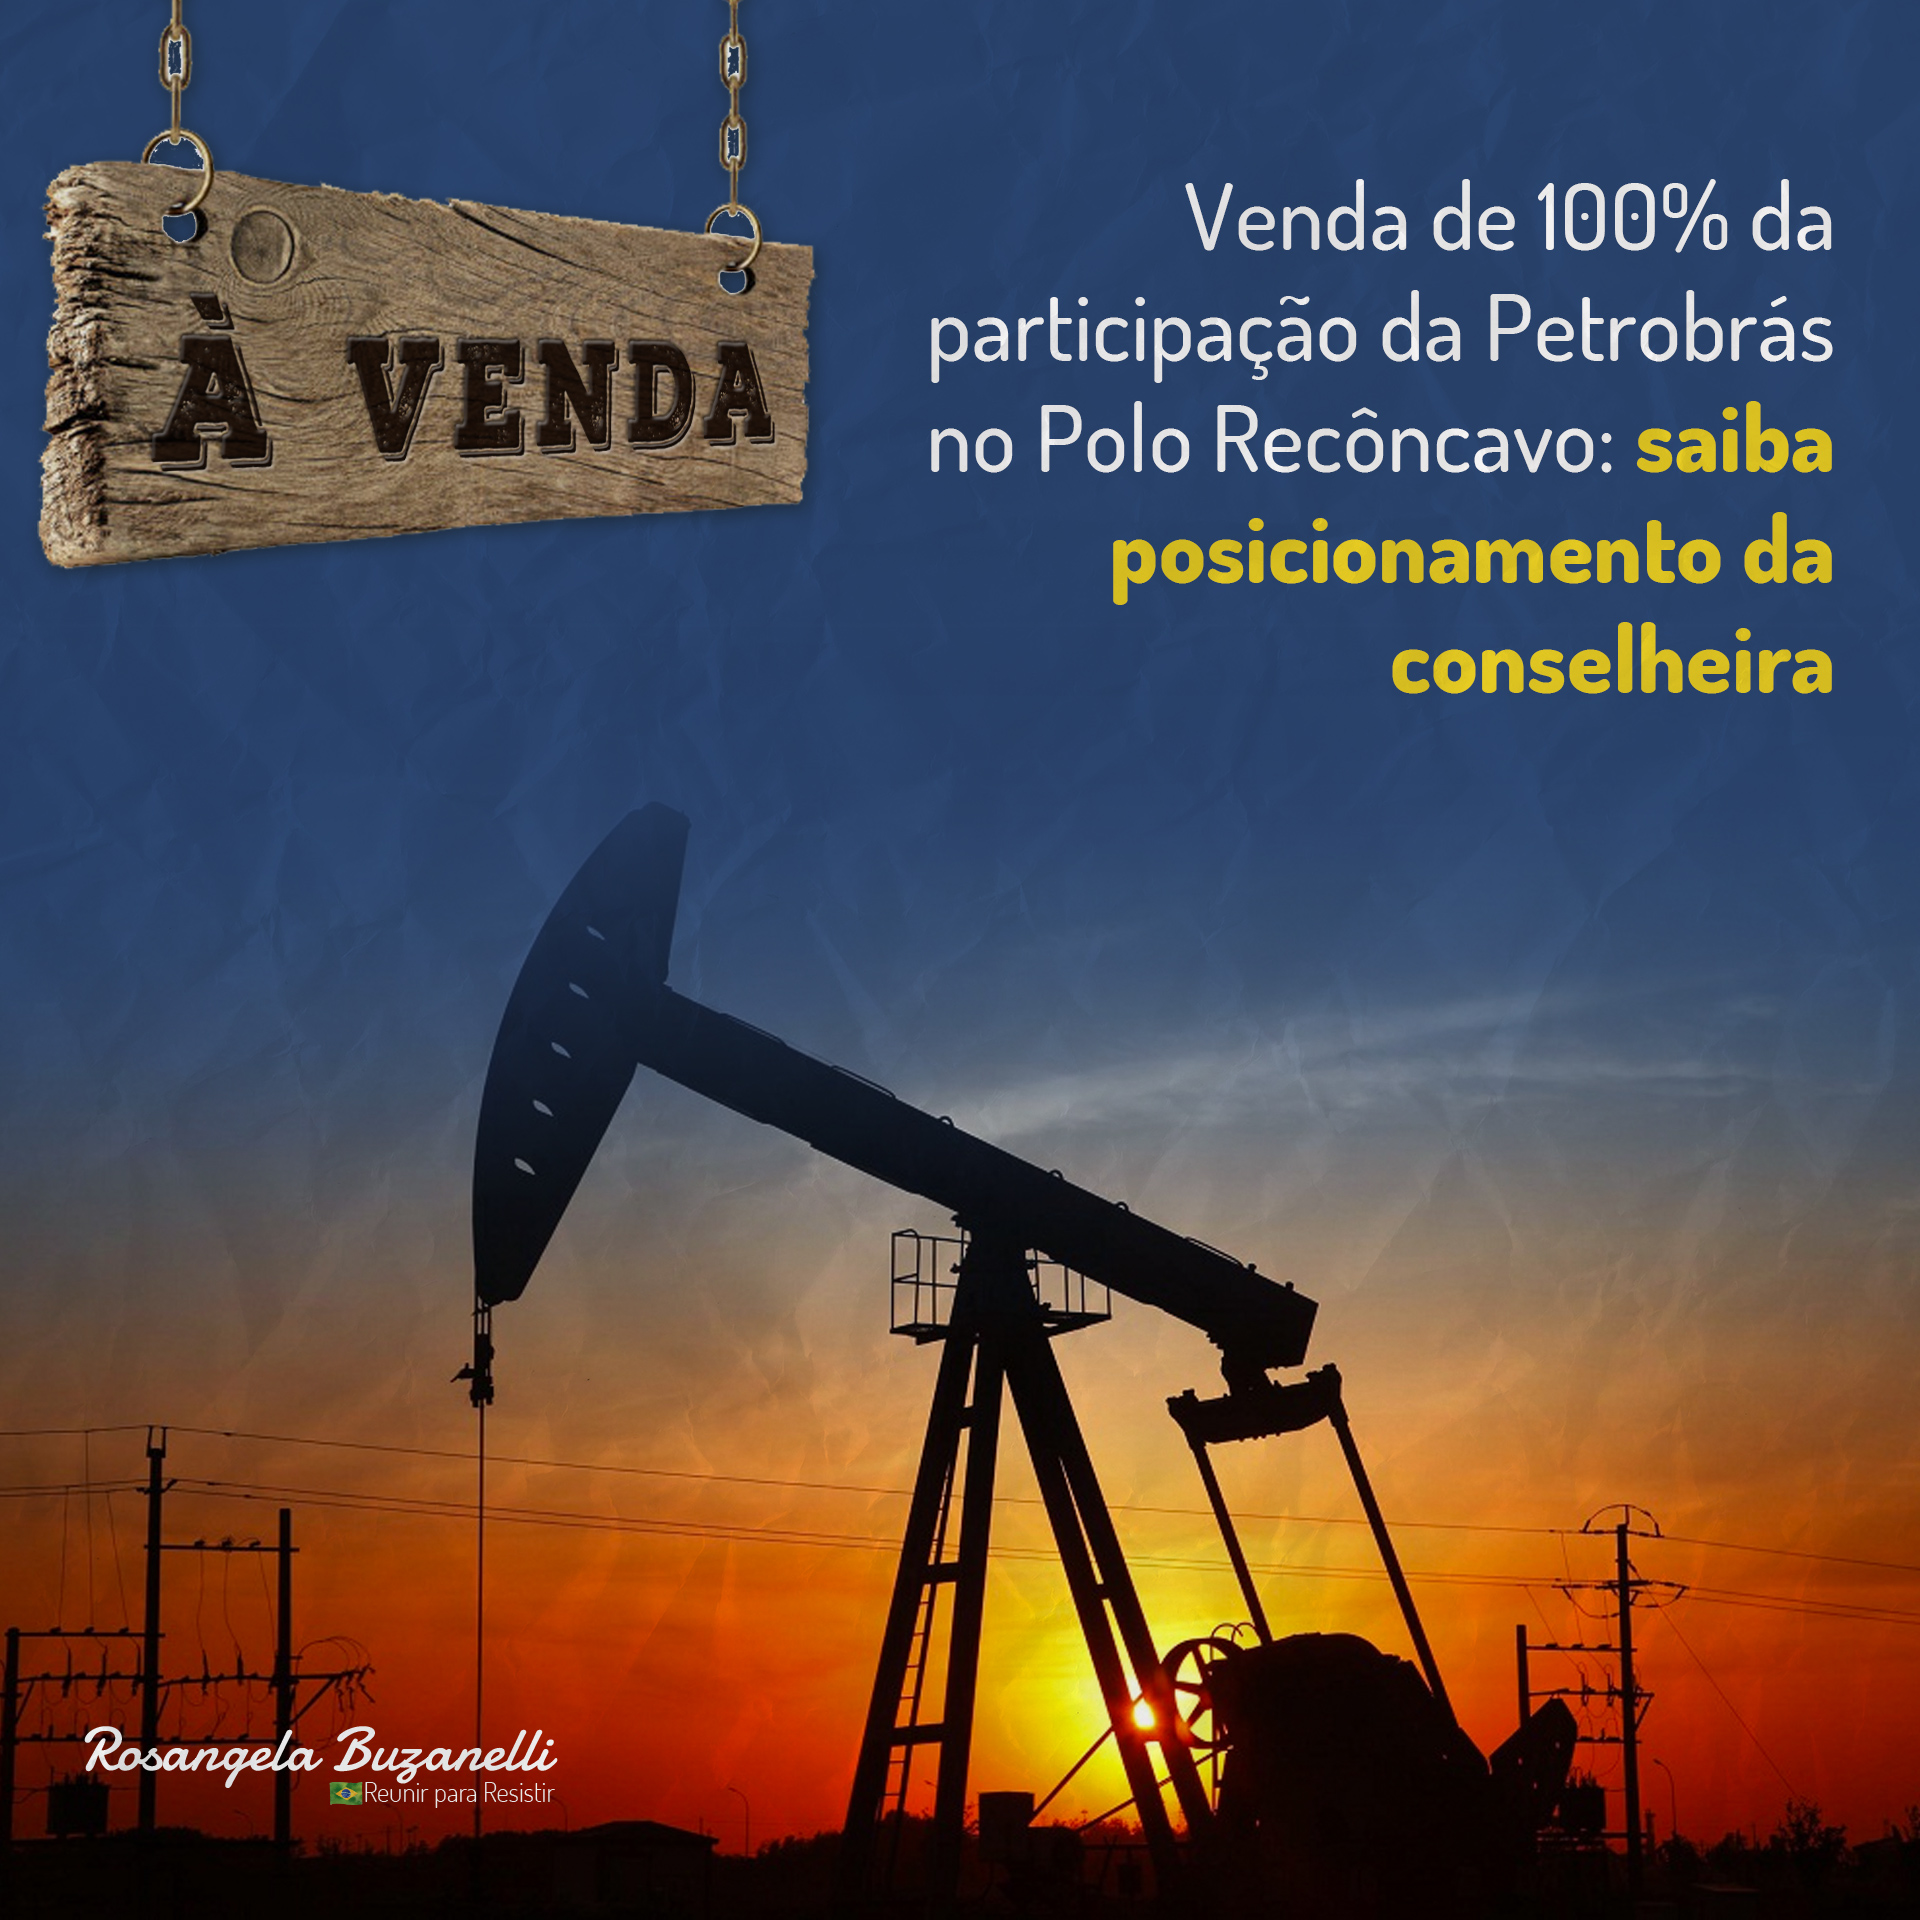 Venda de 100% da participação da Petrobrás no Polo Recôncavo: saiba posicionamento da conselheira